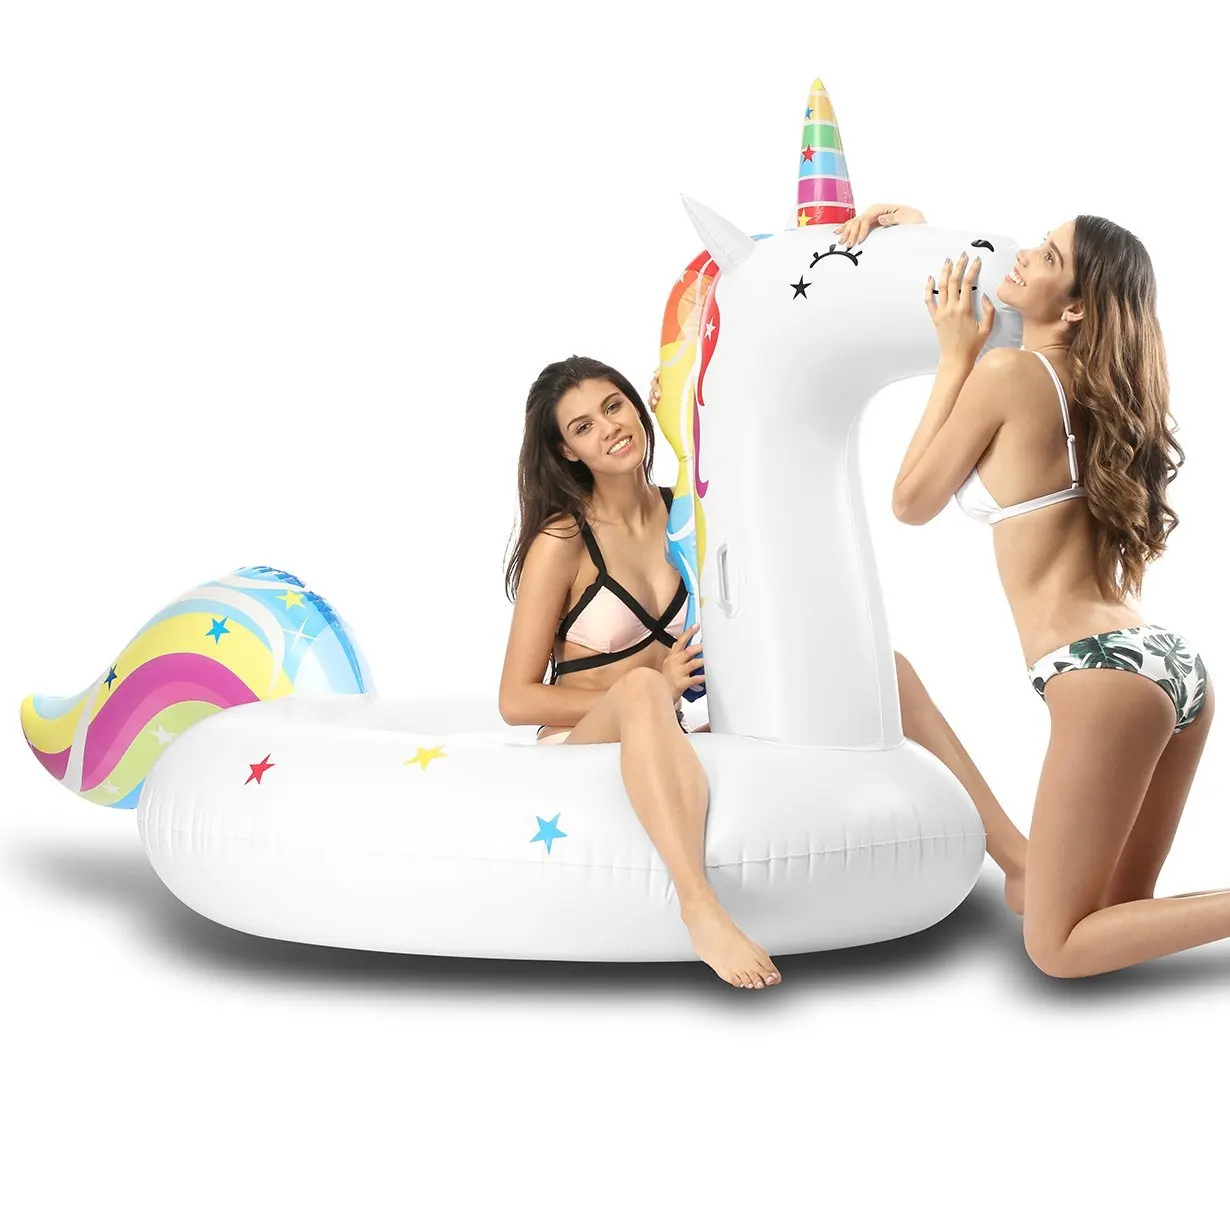 MJFOX Unicorn Pool Floats, Giant Inflatable